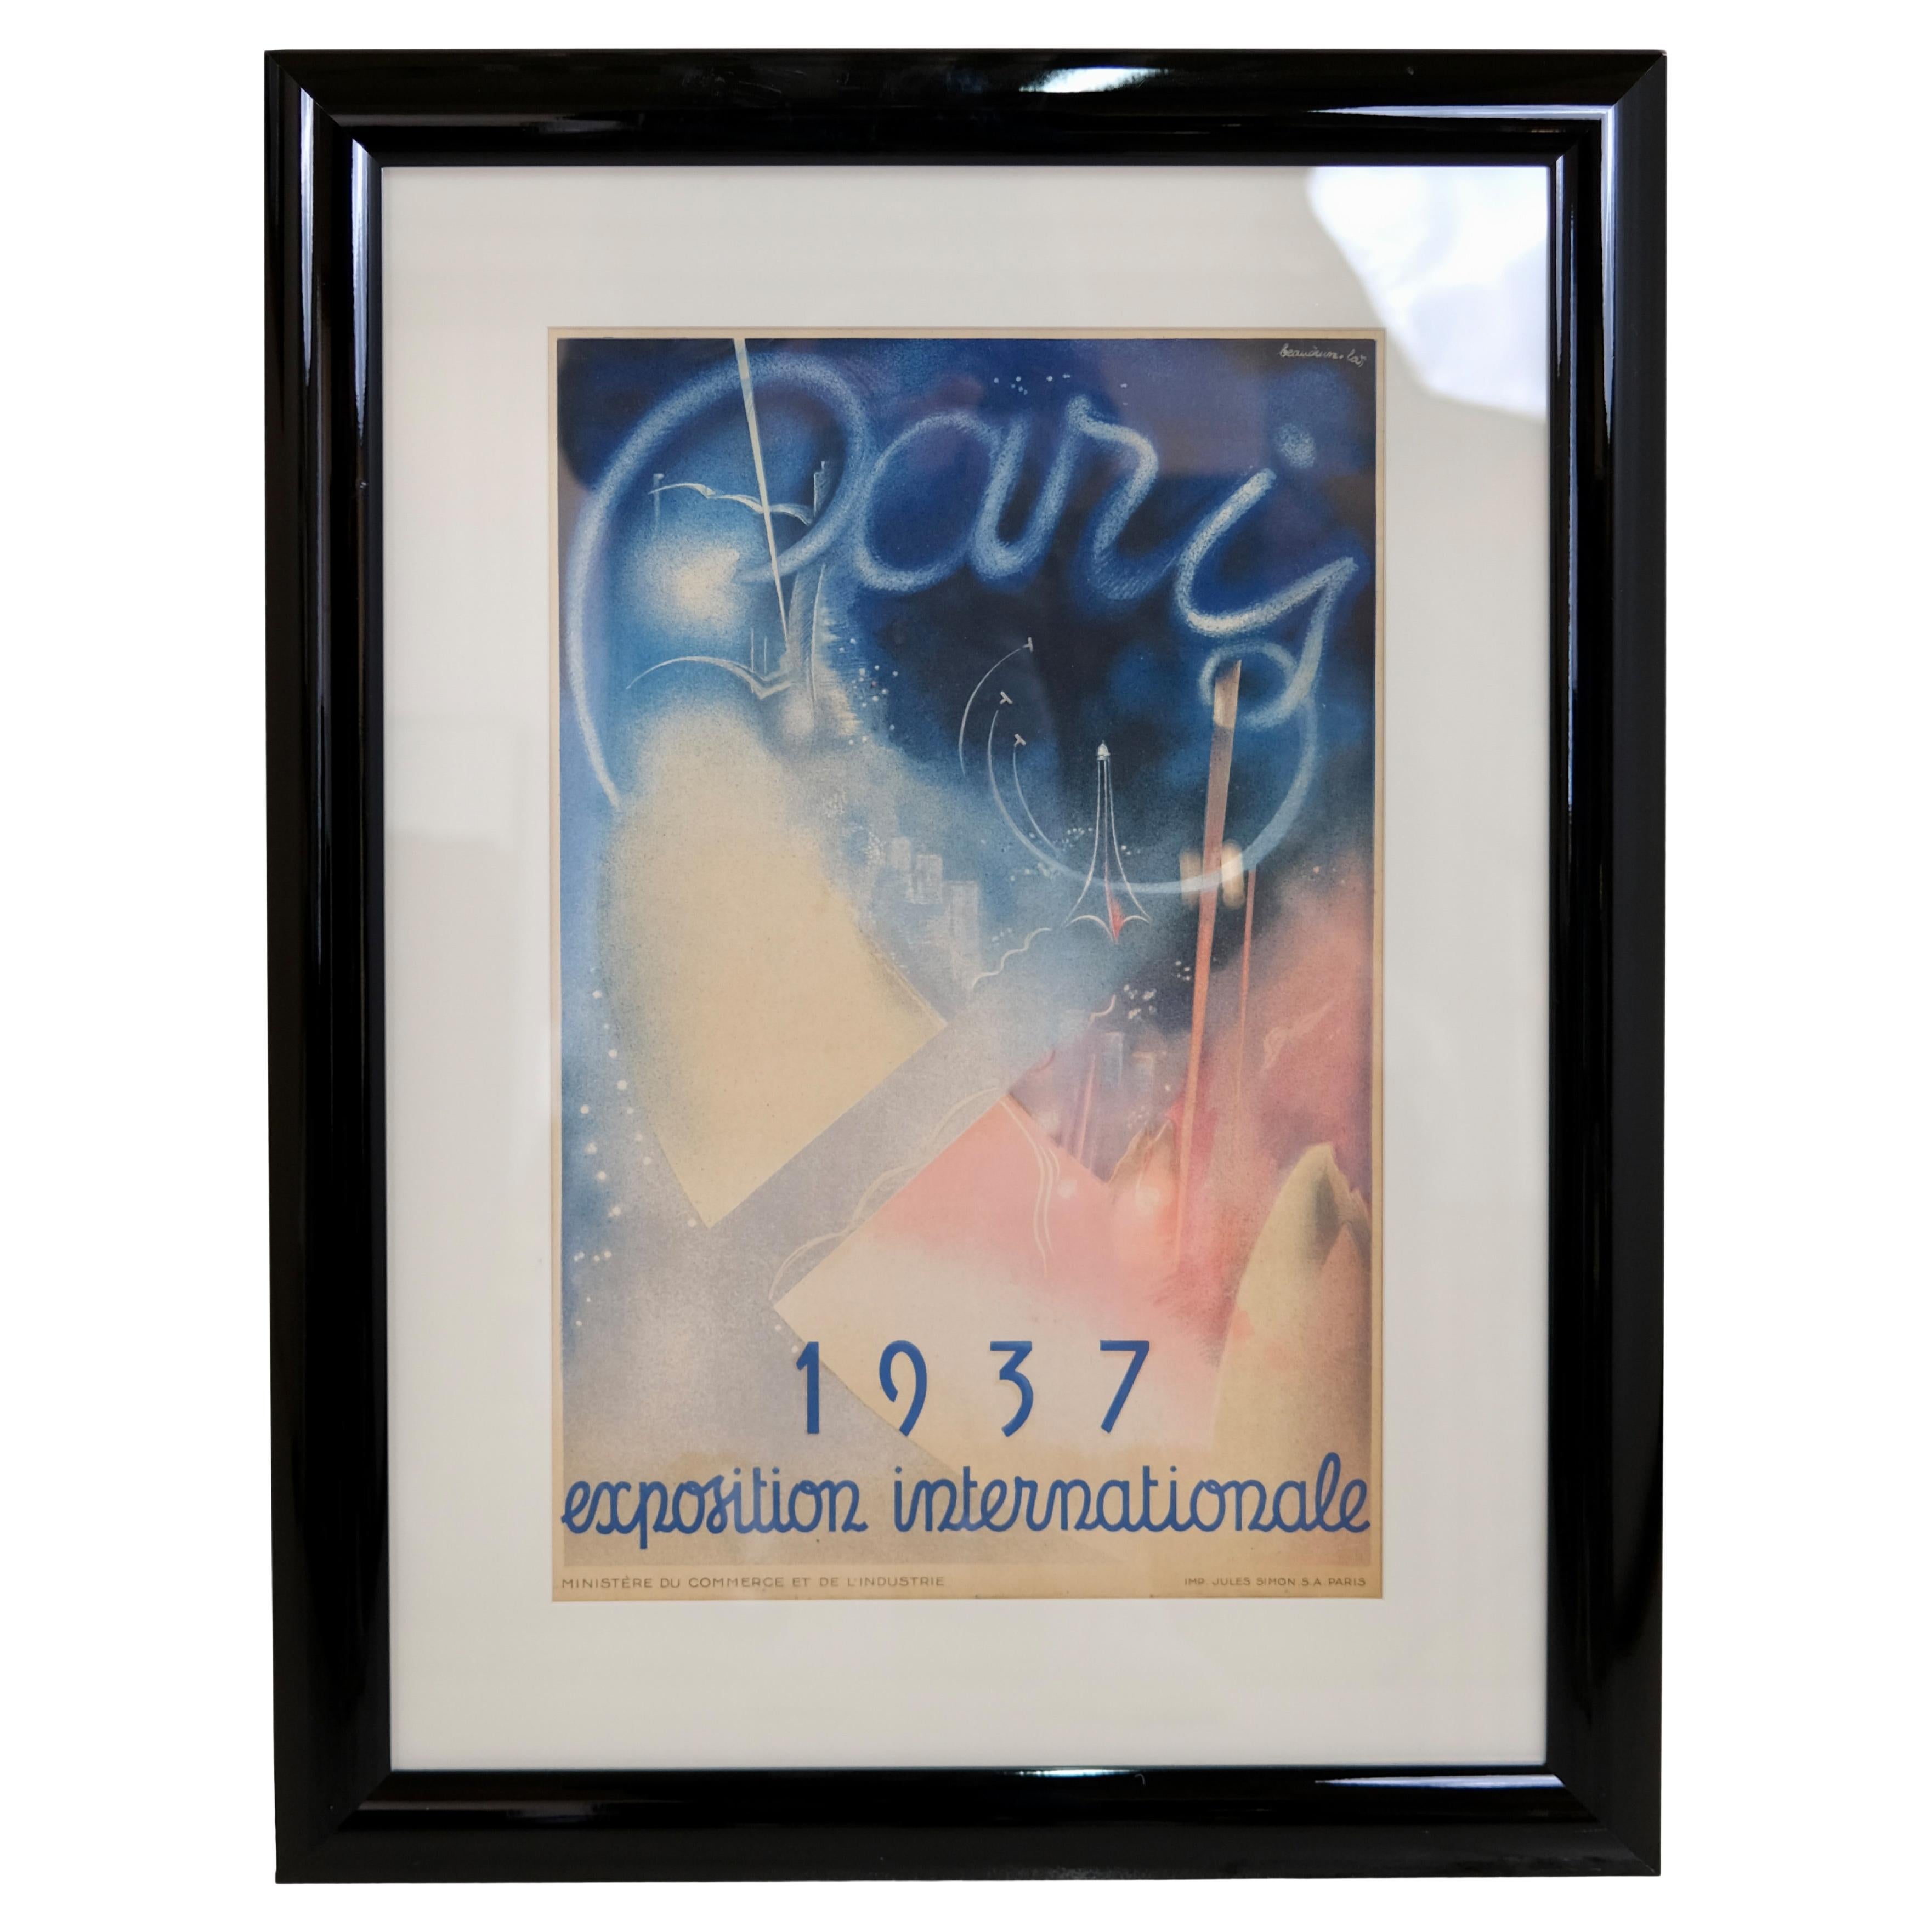 Affiche publicitaire pour l'exposition universelle de 1937 à Paris 